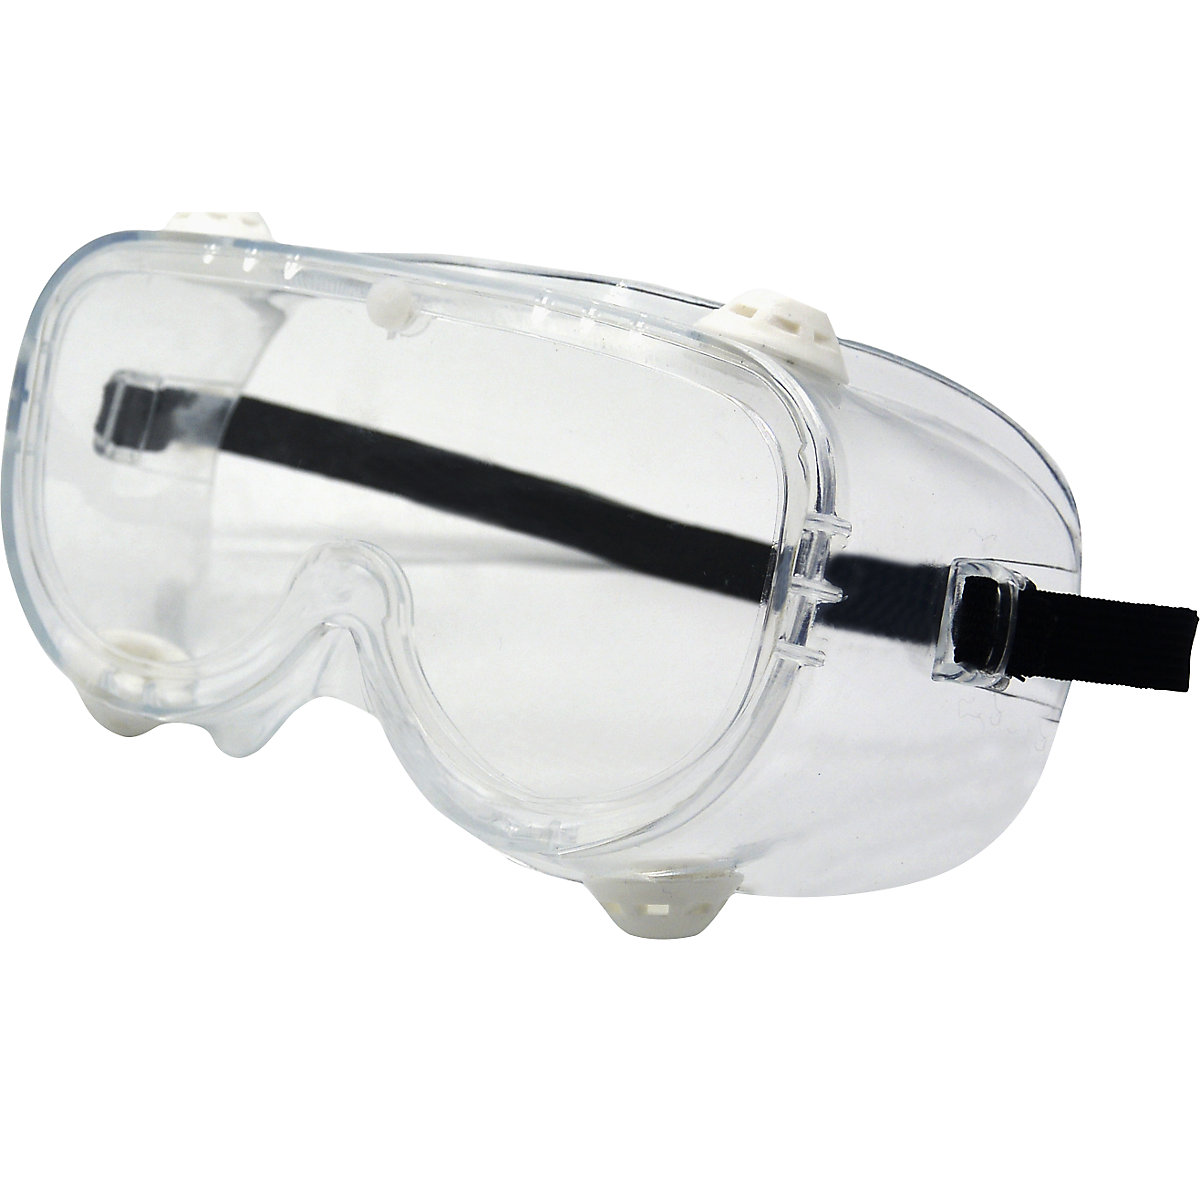 Teljes látómezős védőszemüveg, EN 166 (cs. e. 10 vagy 200 db)